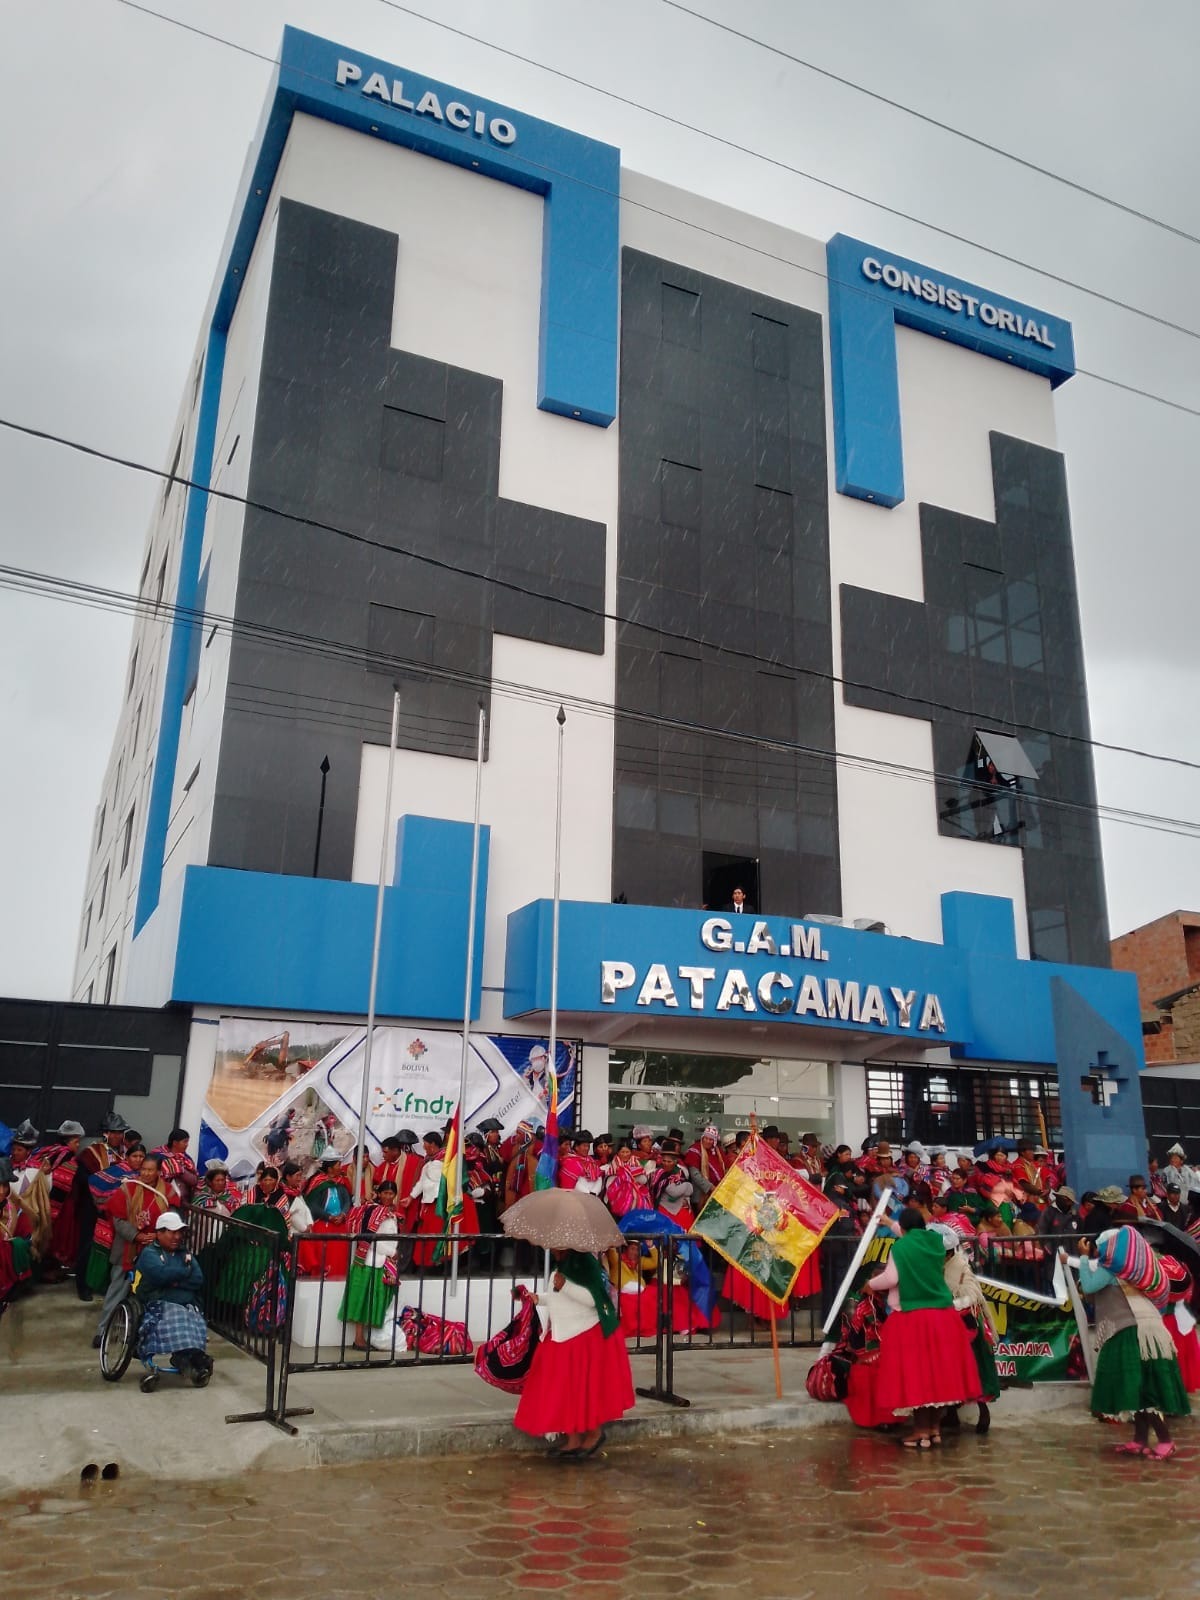 Patacamaya estrena Palacio  Consistorial financiado por FNDR